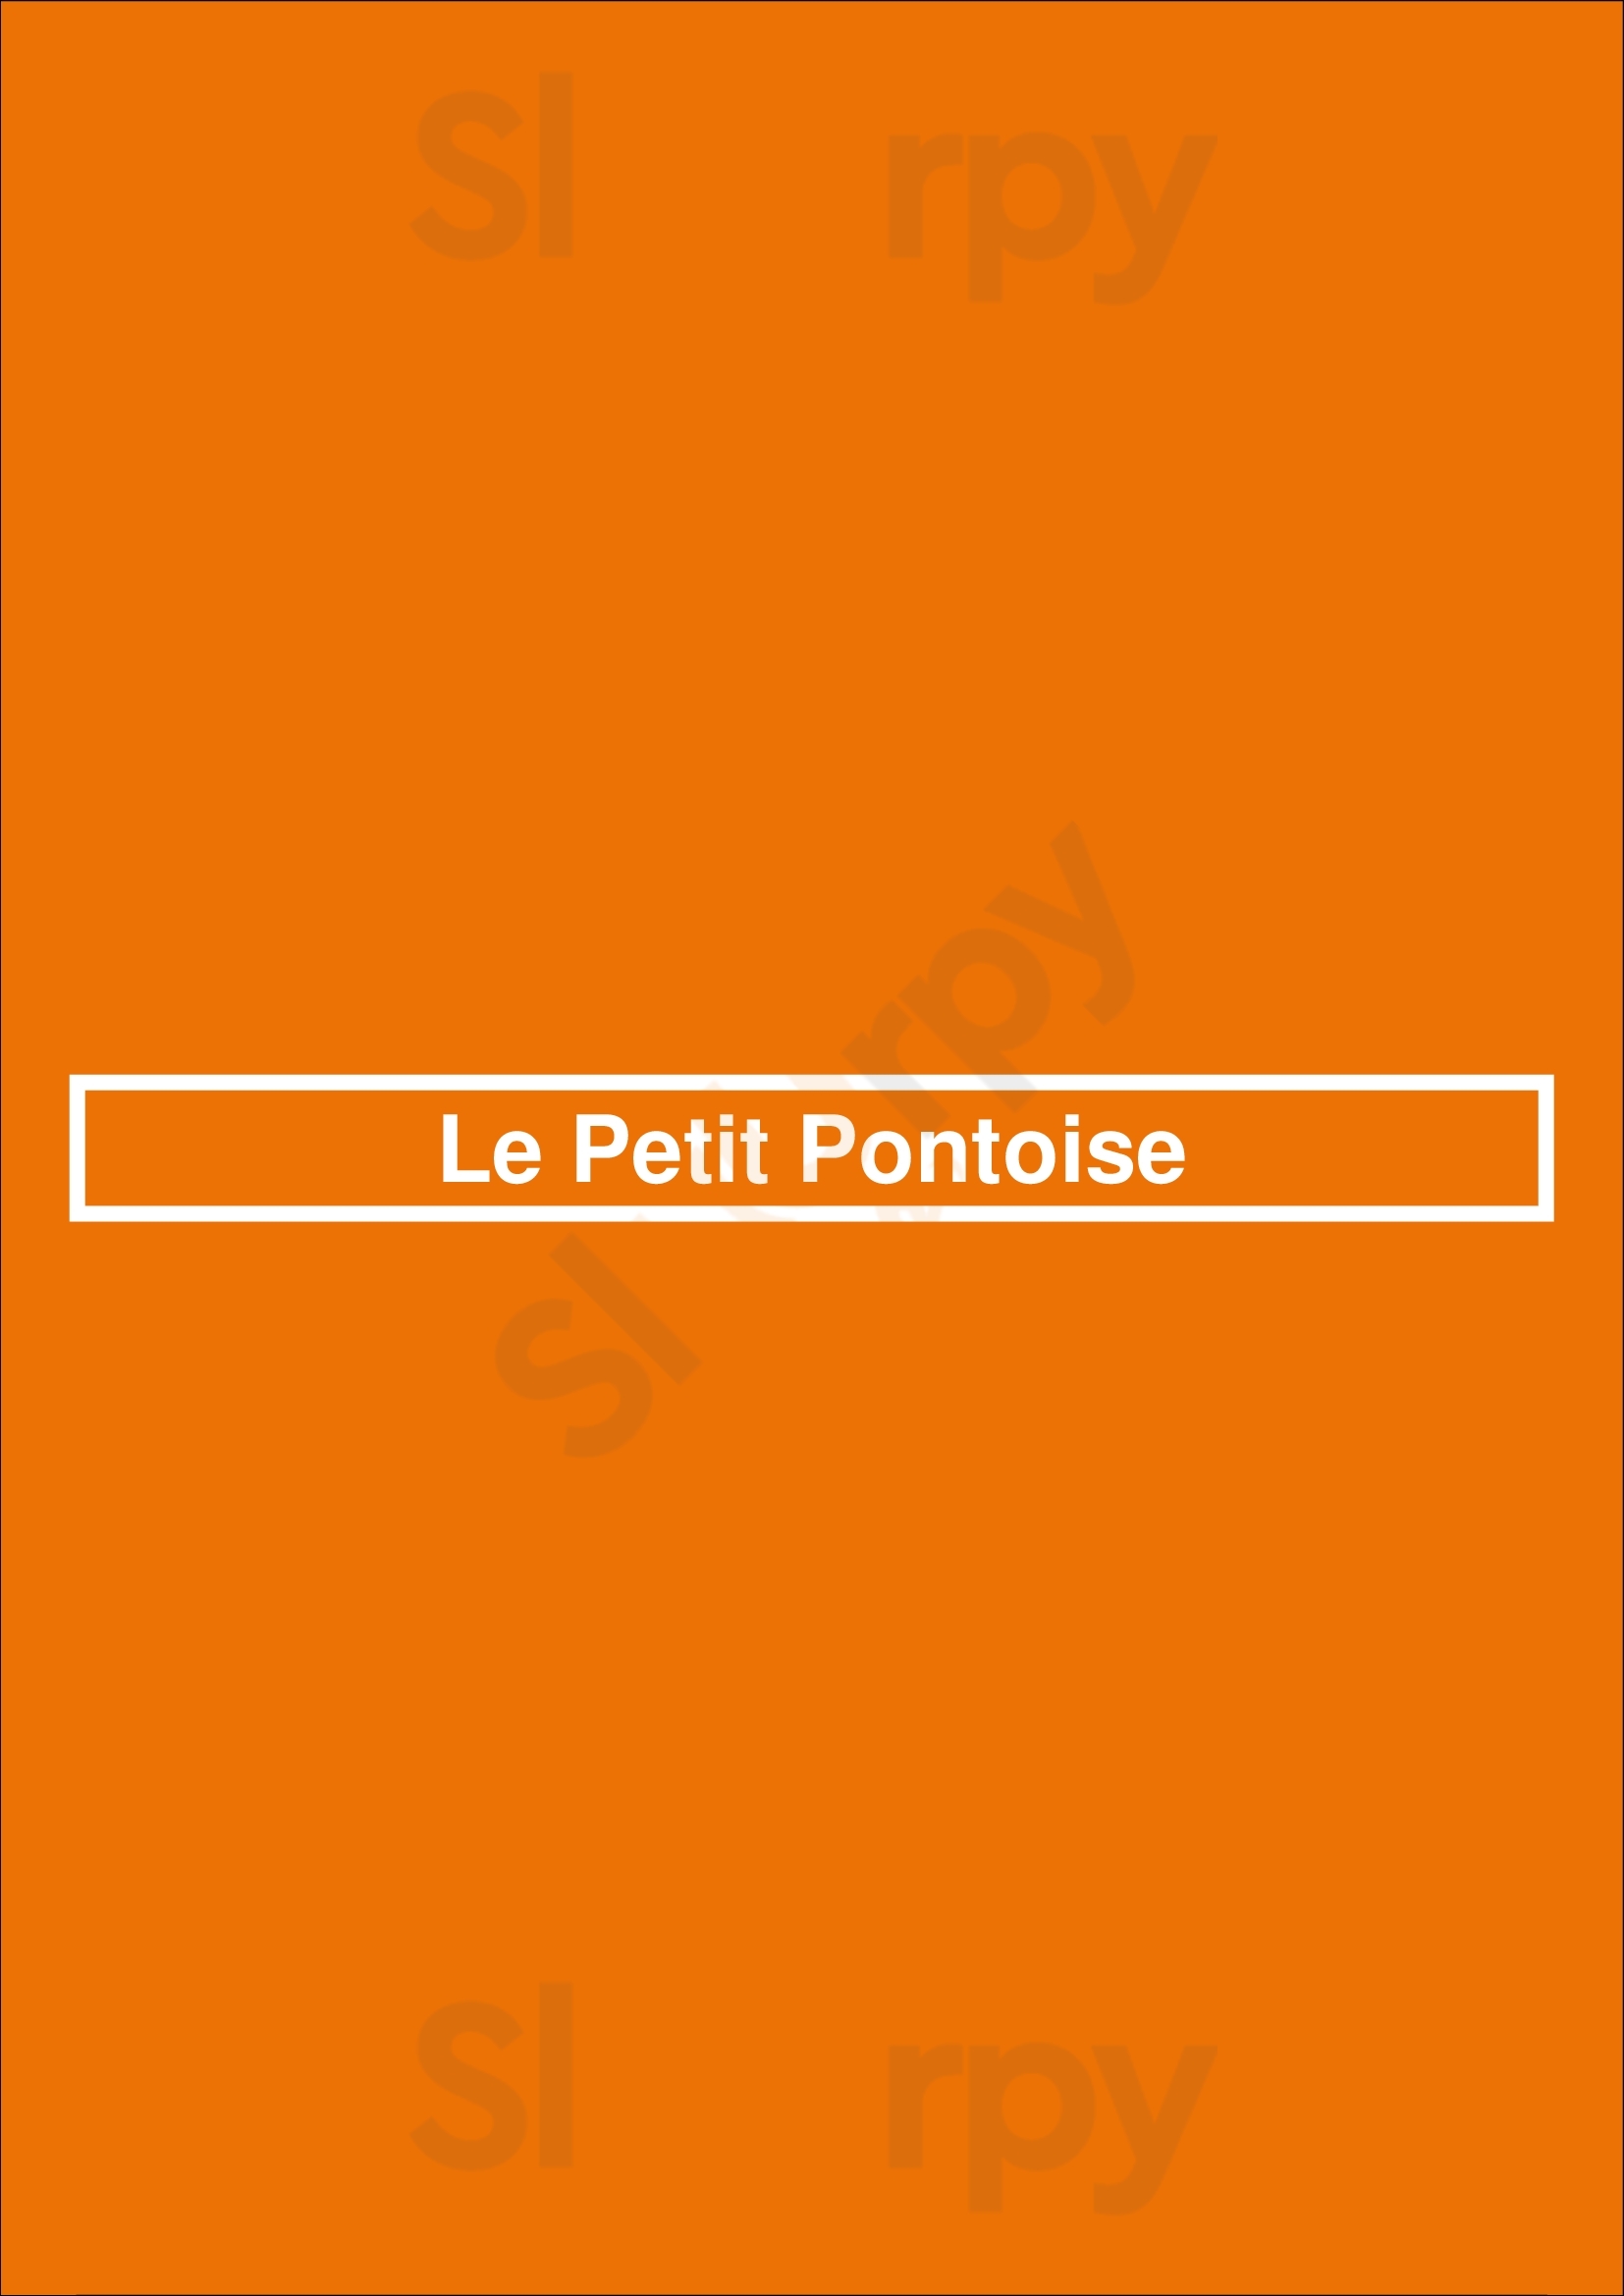 Le Petit Pontoise Paris Menu - 1